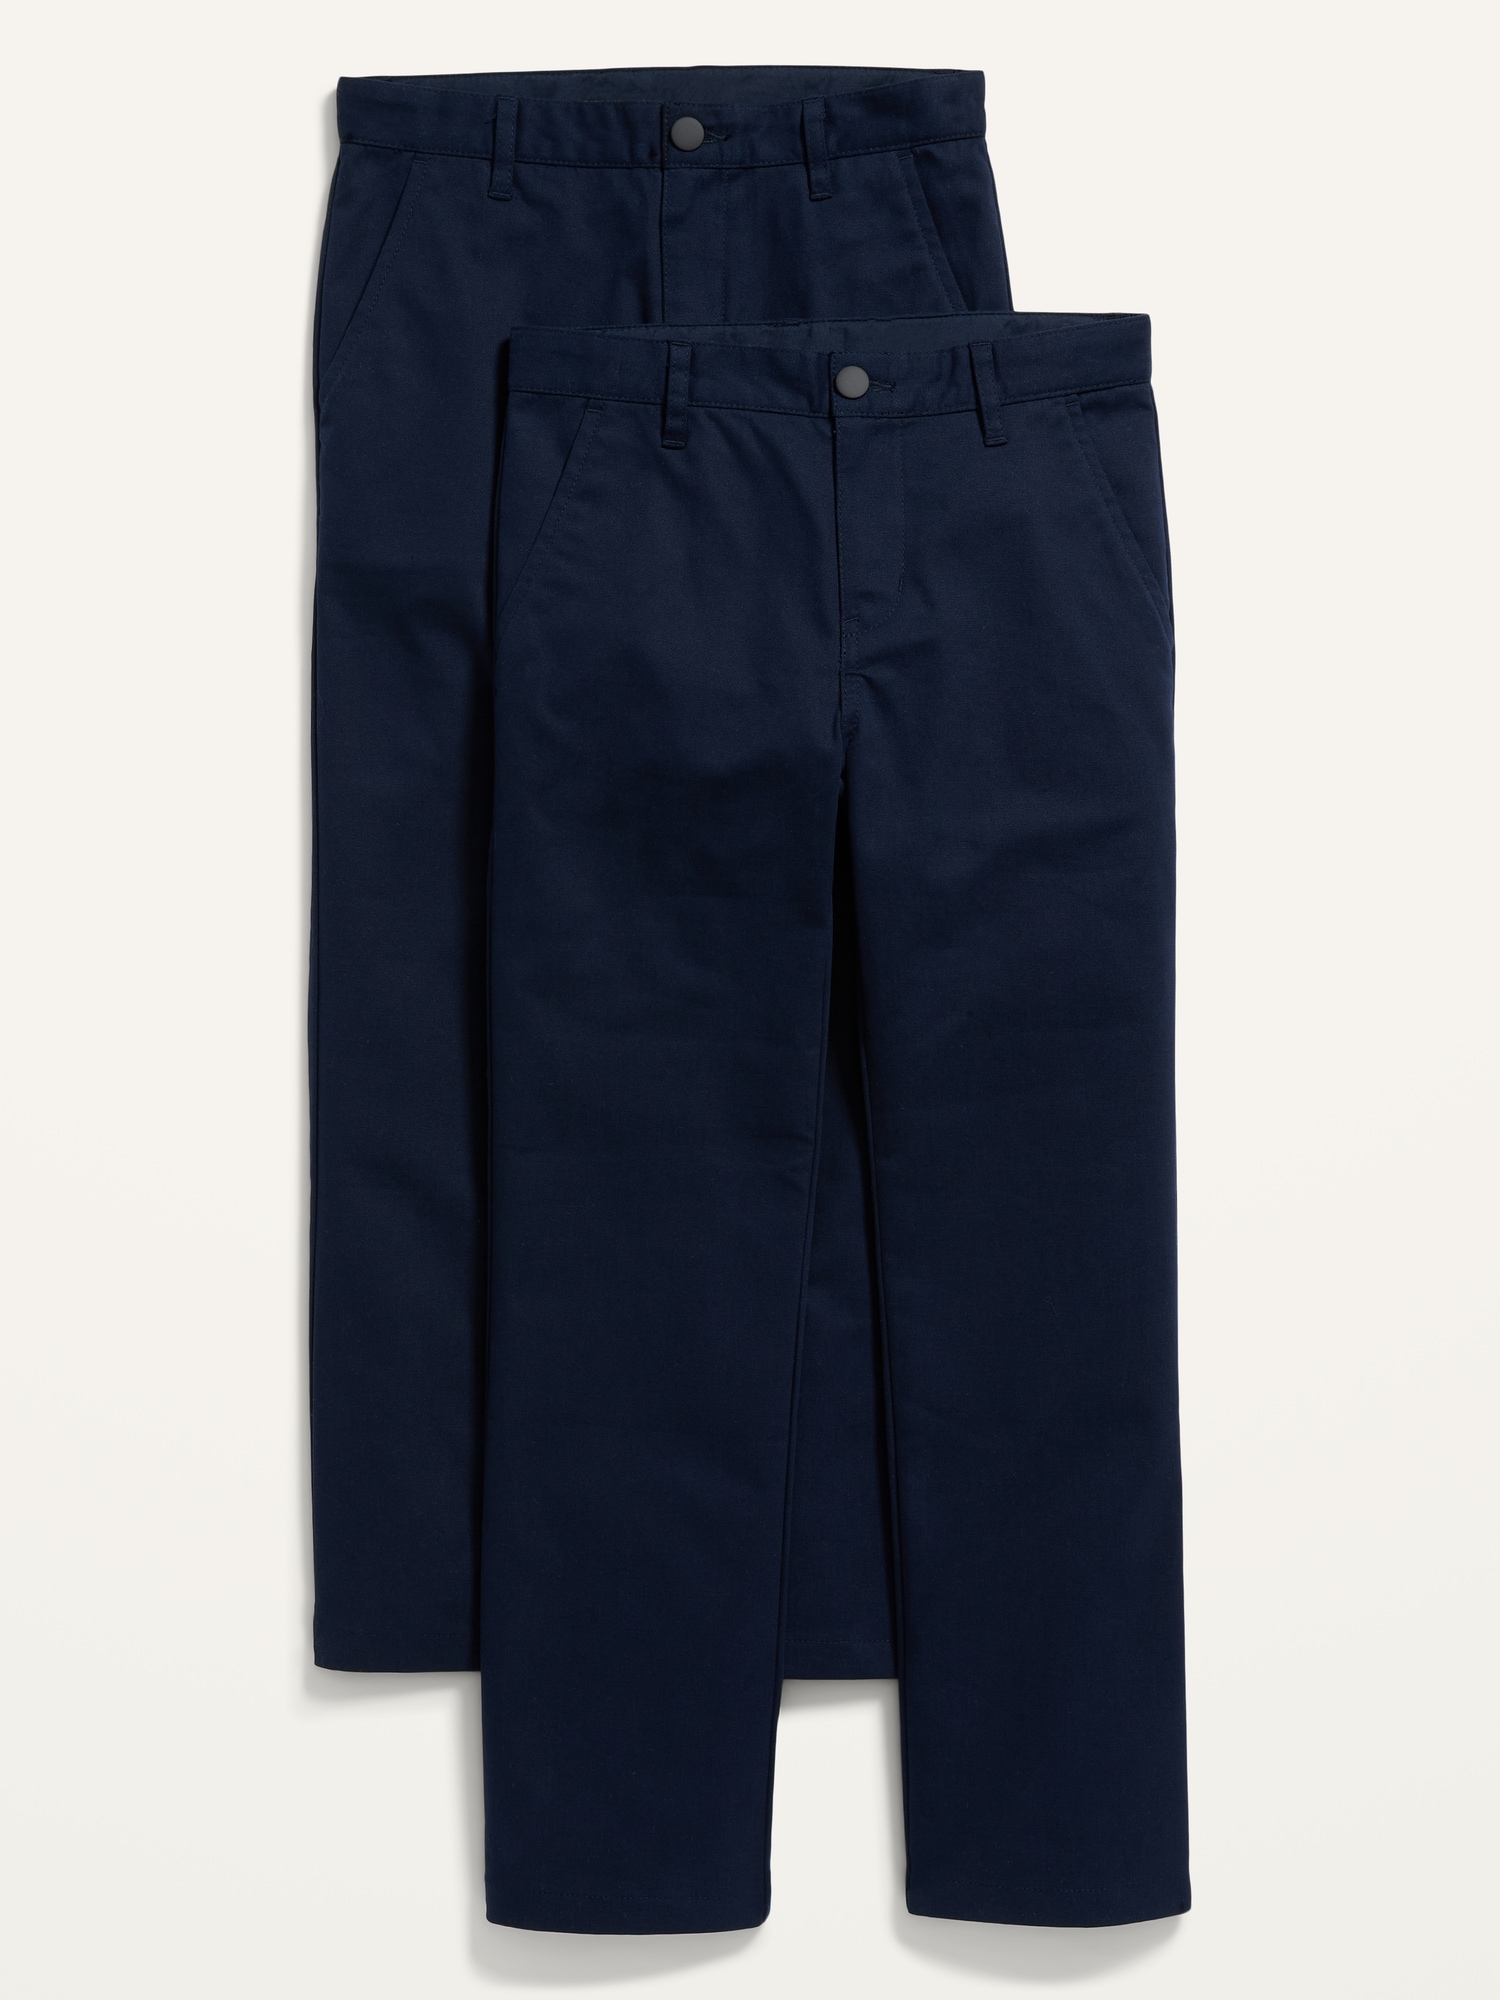 Old Navy Uniform Pants (5 Pair) Sz5